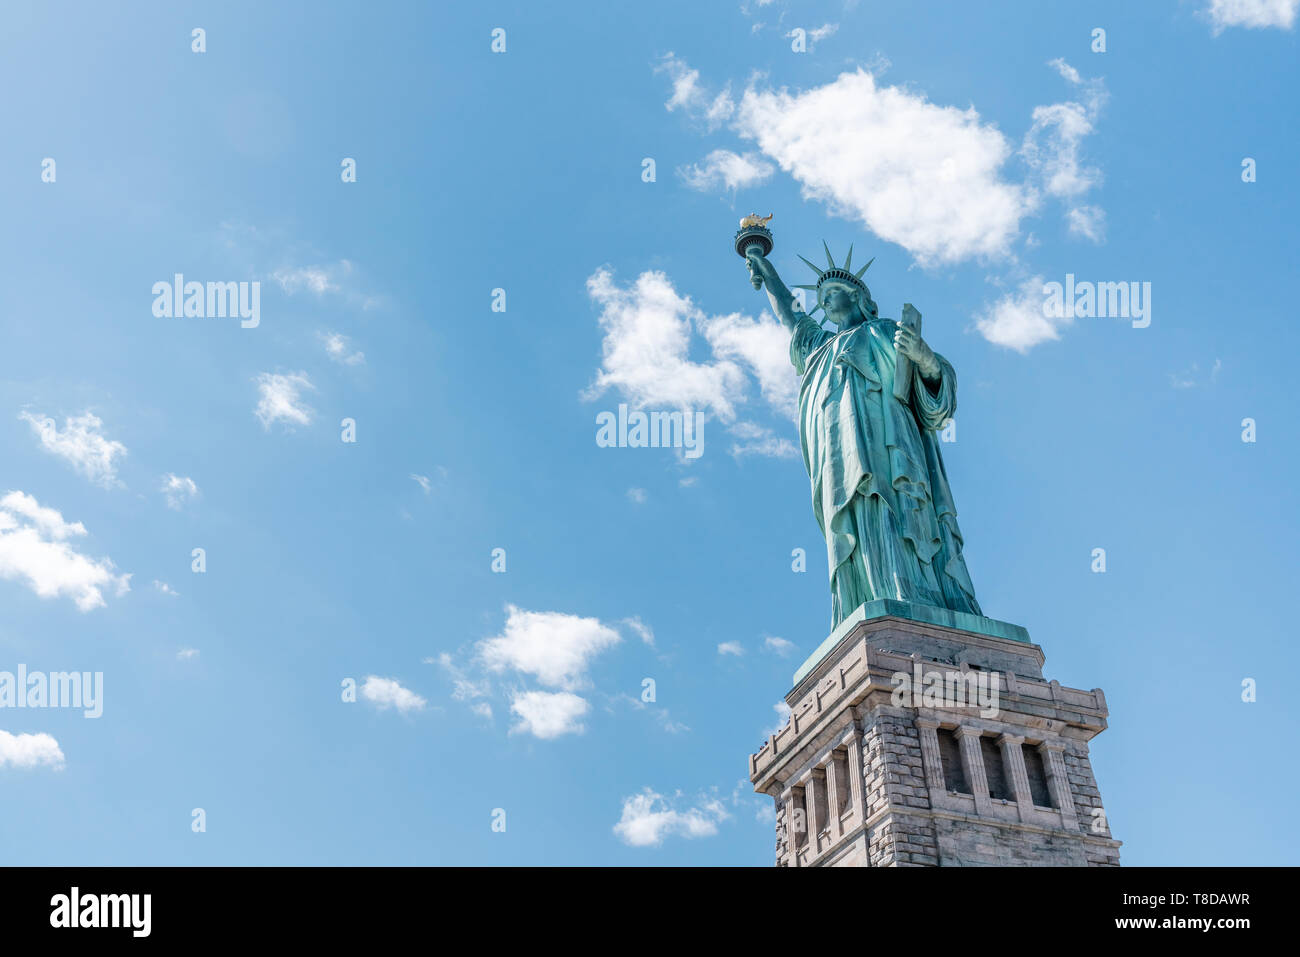 Freiheitsstatue an einem sonnigen Tag, klare blaue Himmel Hintergrund. United States nation Symbol, Reiseziel oder Amerika Touristenattraktion Konzept Stockfoto